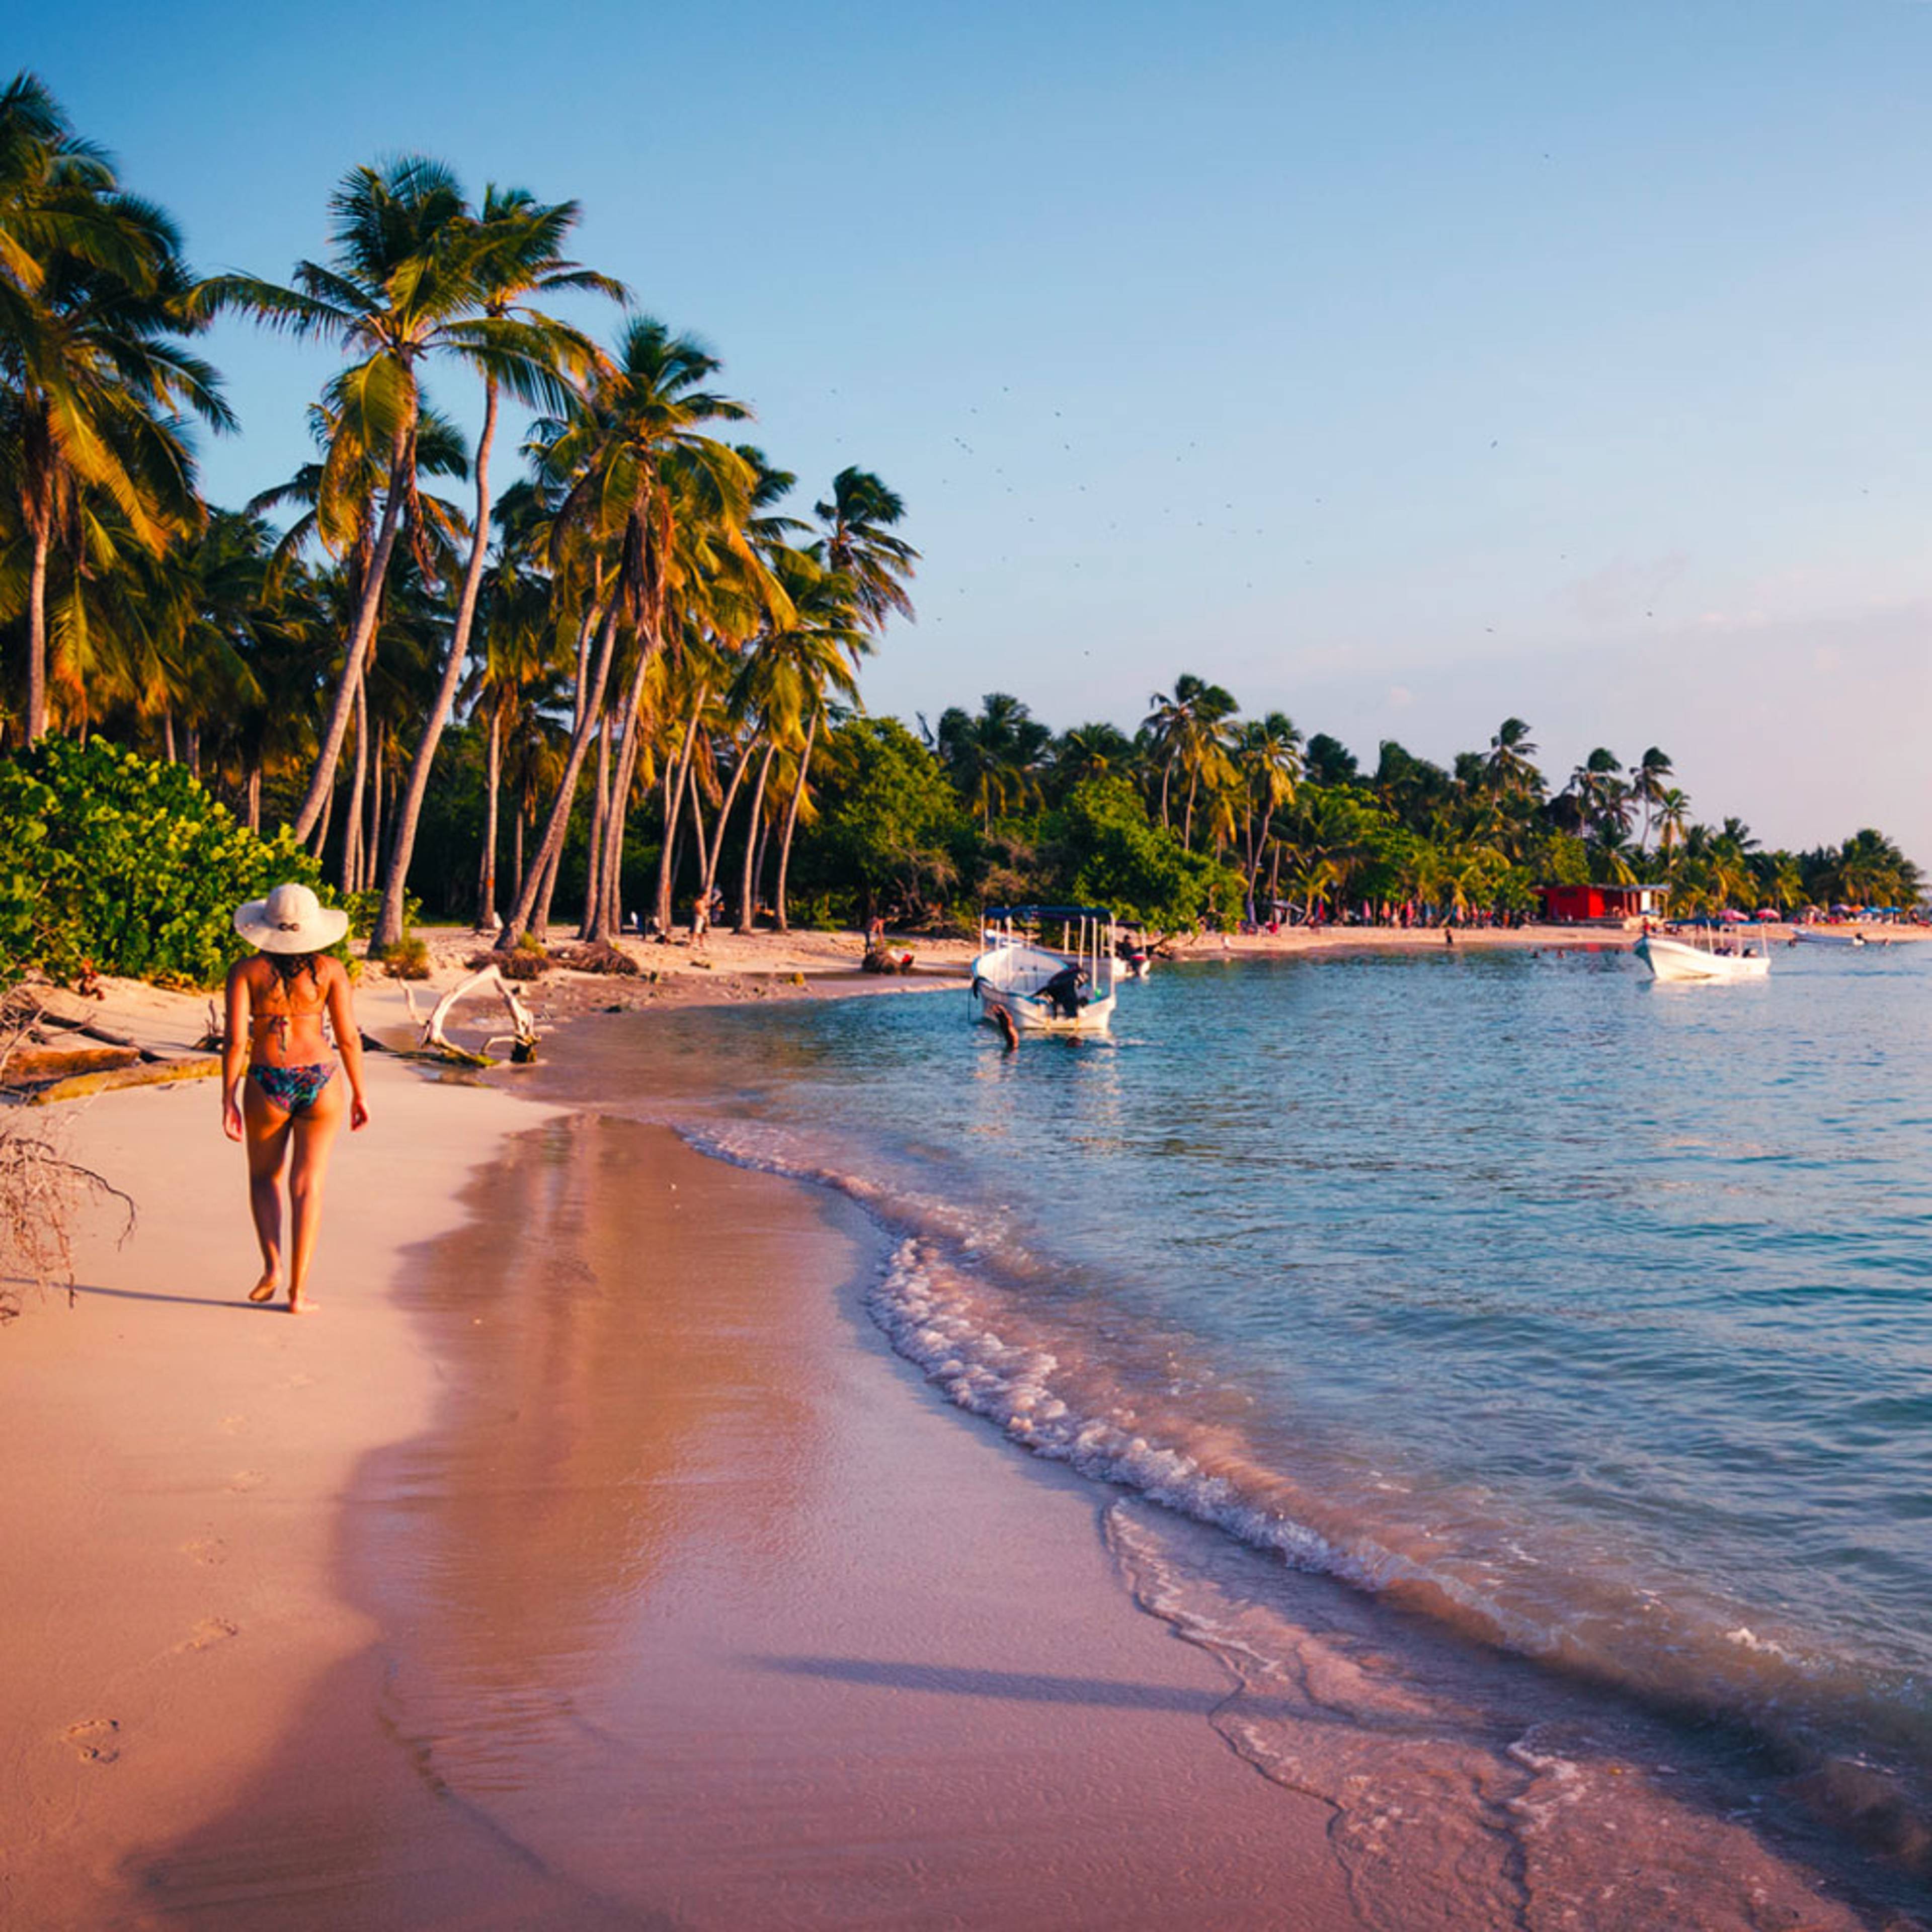 Découvrez les plus belles plages lors de votre voyage au Venezuela 100% sur mesure